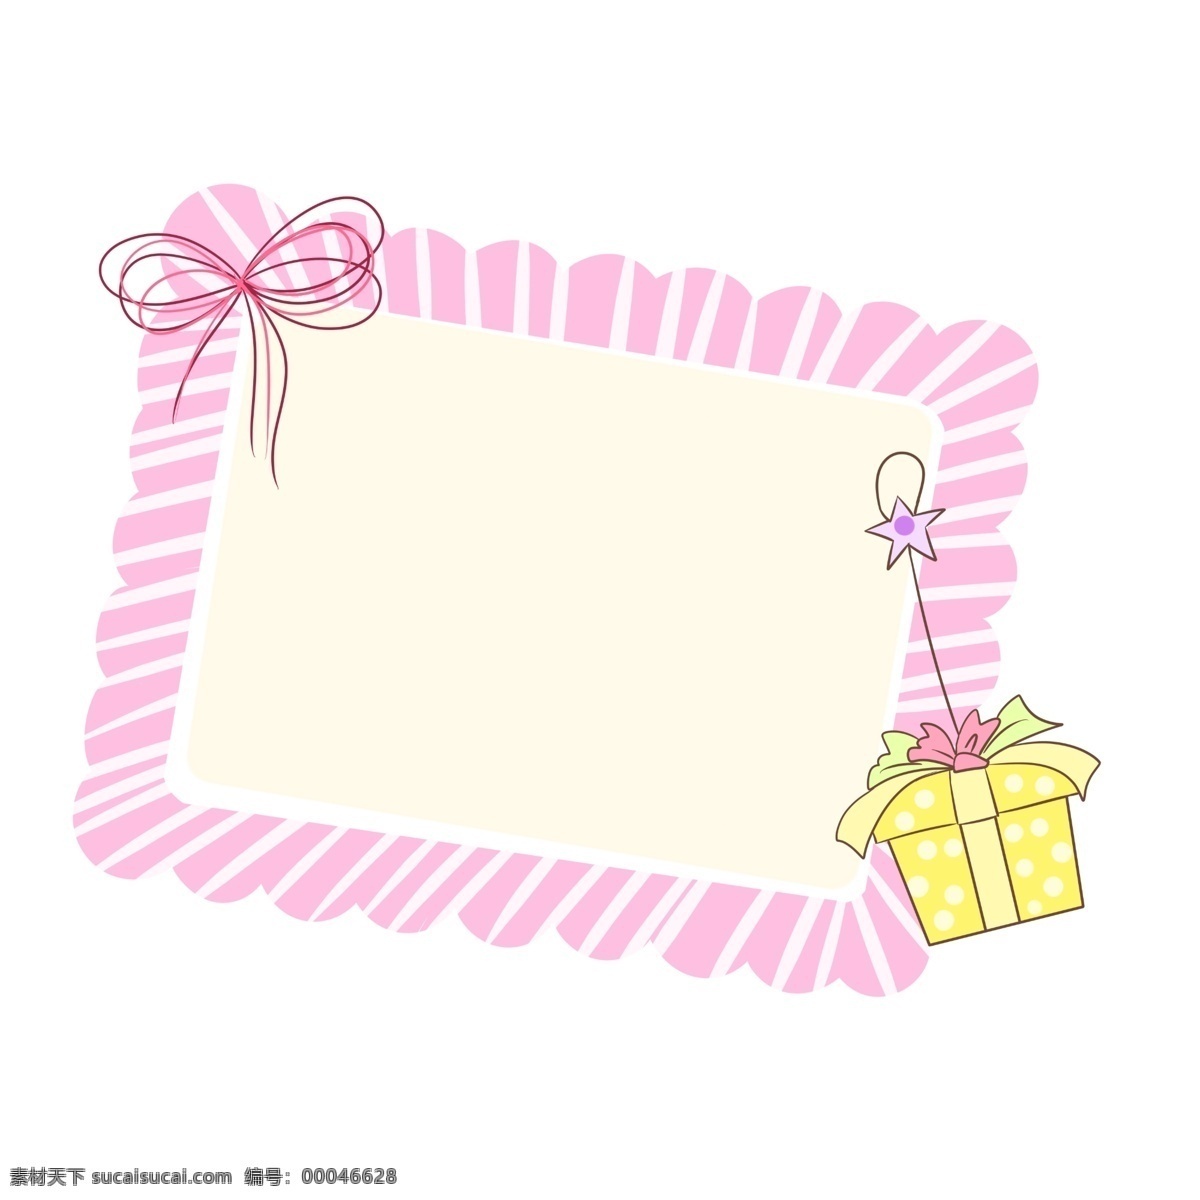 粉色 可爱 边框 插画 粉色边框 粉色花边边框 温馨 礼物边框 蝴蝶结装饰 黄色礼物盒 挂起的盒子